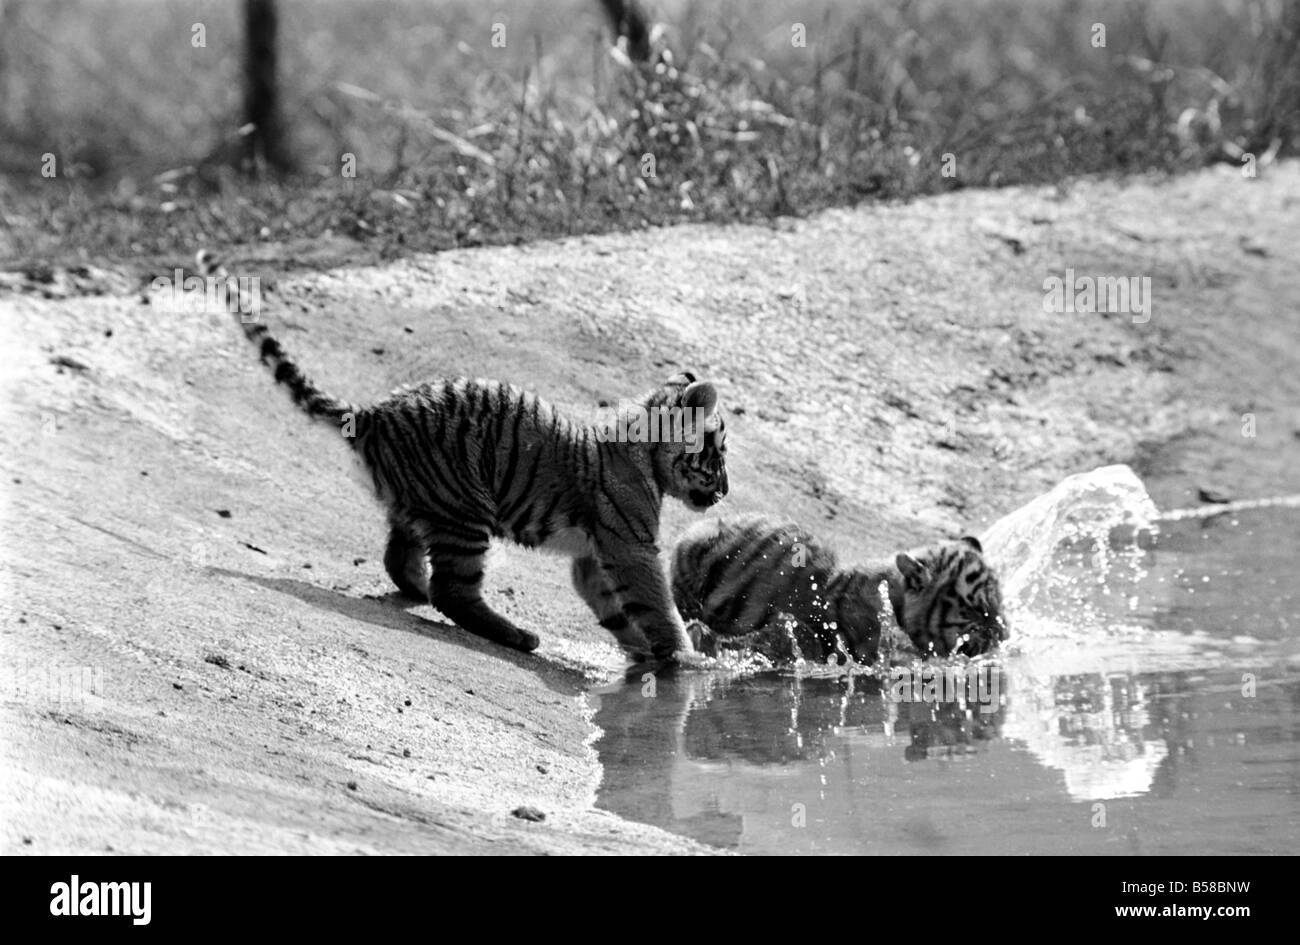 Tigerbabys in Longleat. 3 sibirischen Tigerbabys sowie liebevolle männliche und weibliche Tiger. Diese seltene und teure Tiere sind am Longleat Wild Life Park in der Sonne aalen. Wilts. August 1977 77-04331-001 Stockfoto